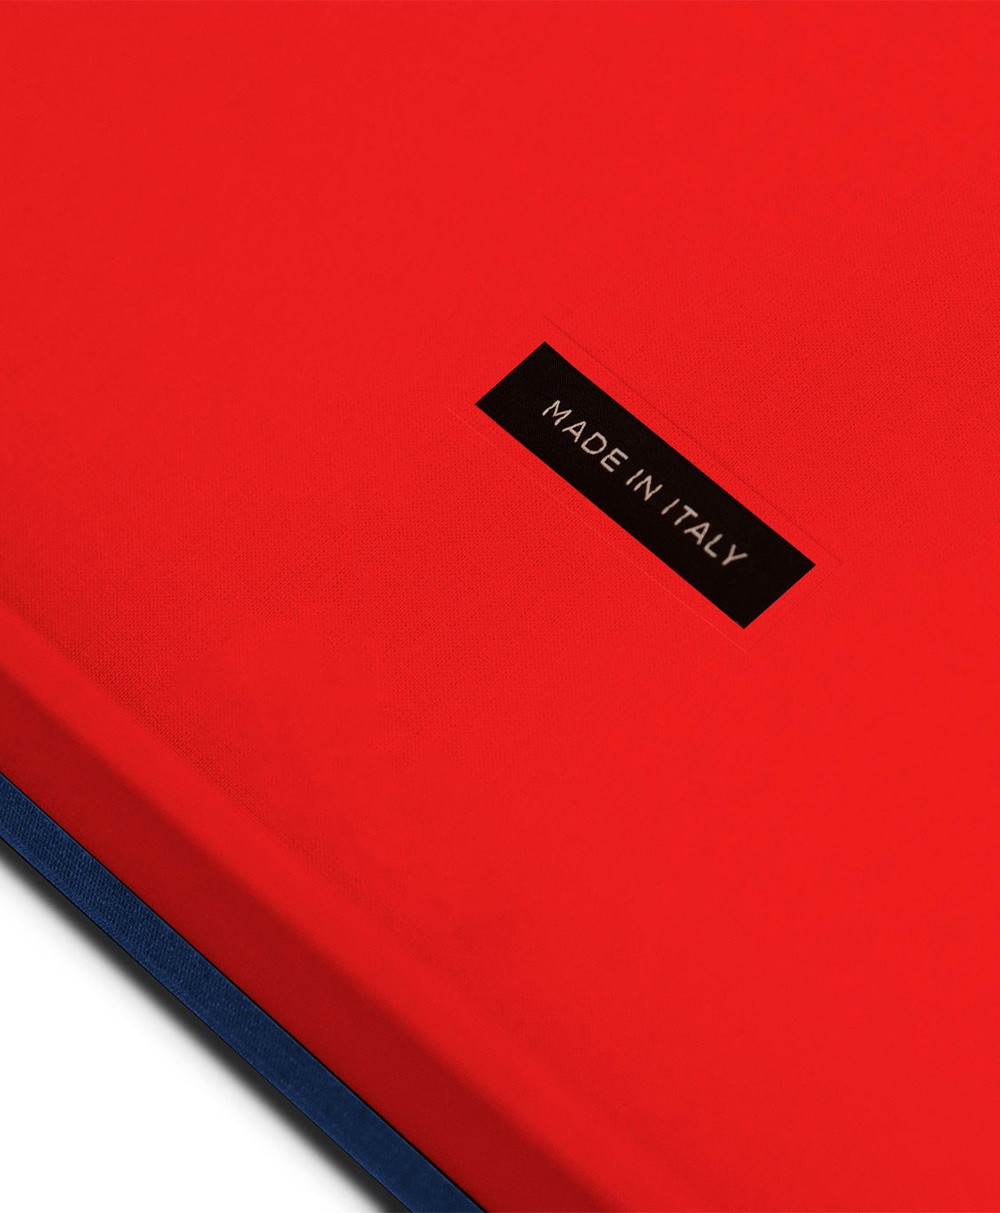 Produktbild der Ultimate Collection von Assouline, Bildband „Paris Saint-Germain“ im RAUM concept store 